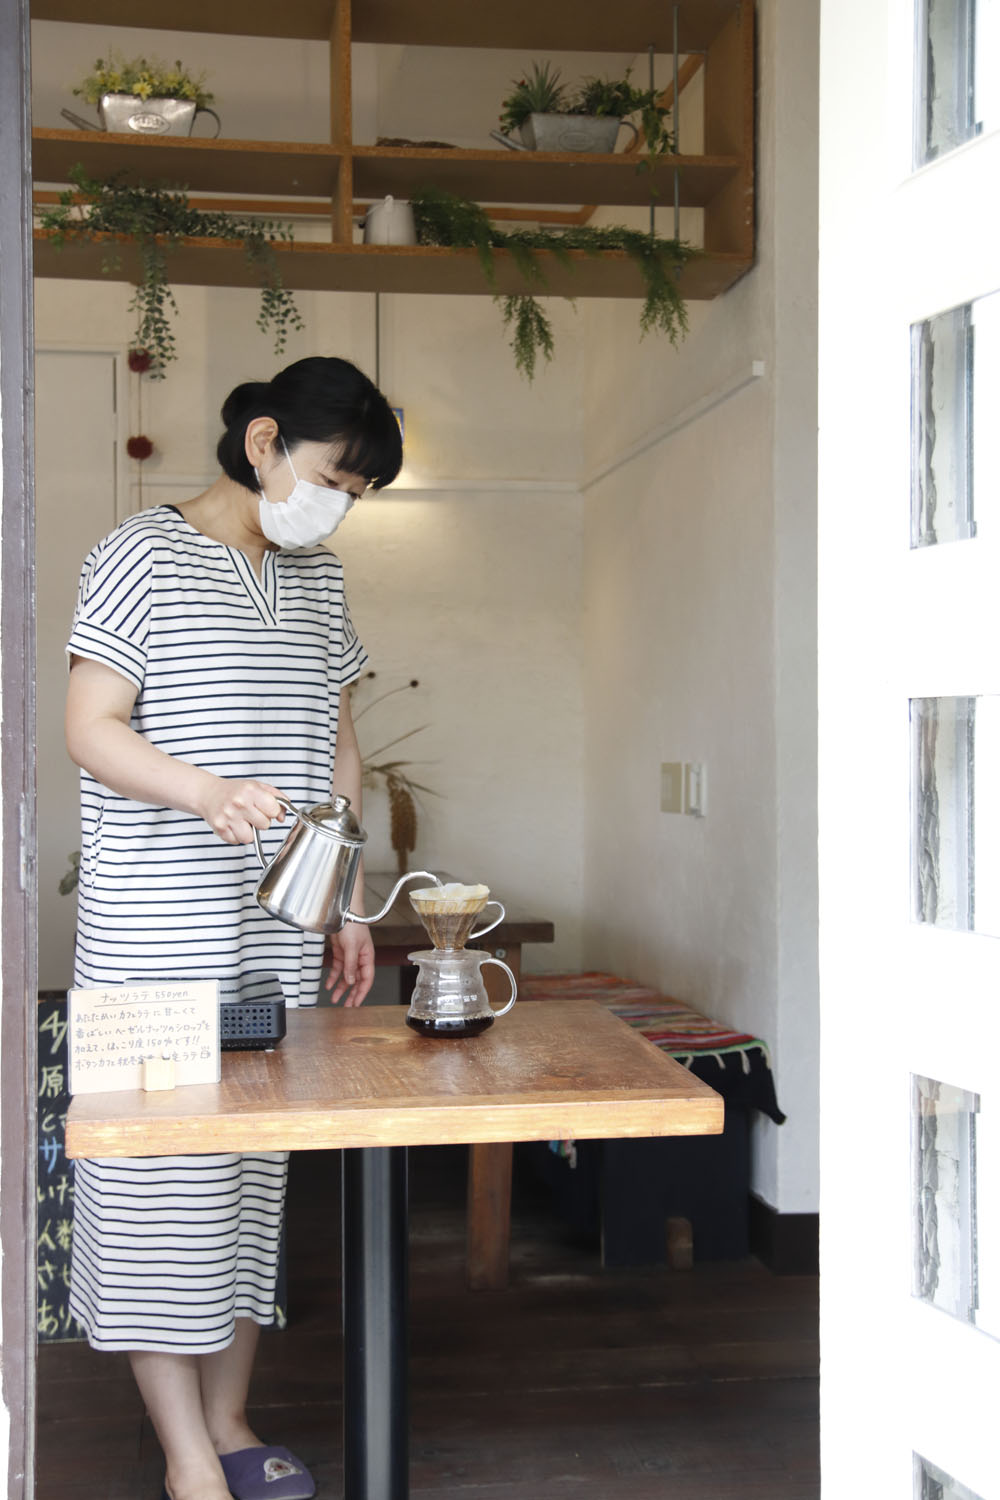 中村さんは時折、店頭で実演販売をする。また、客が自宅から持ちこんだ豆を、プロの技術で淹れるサービスも。